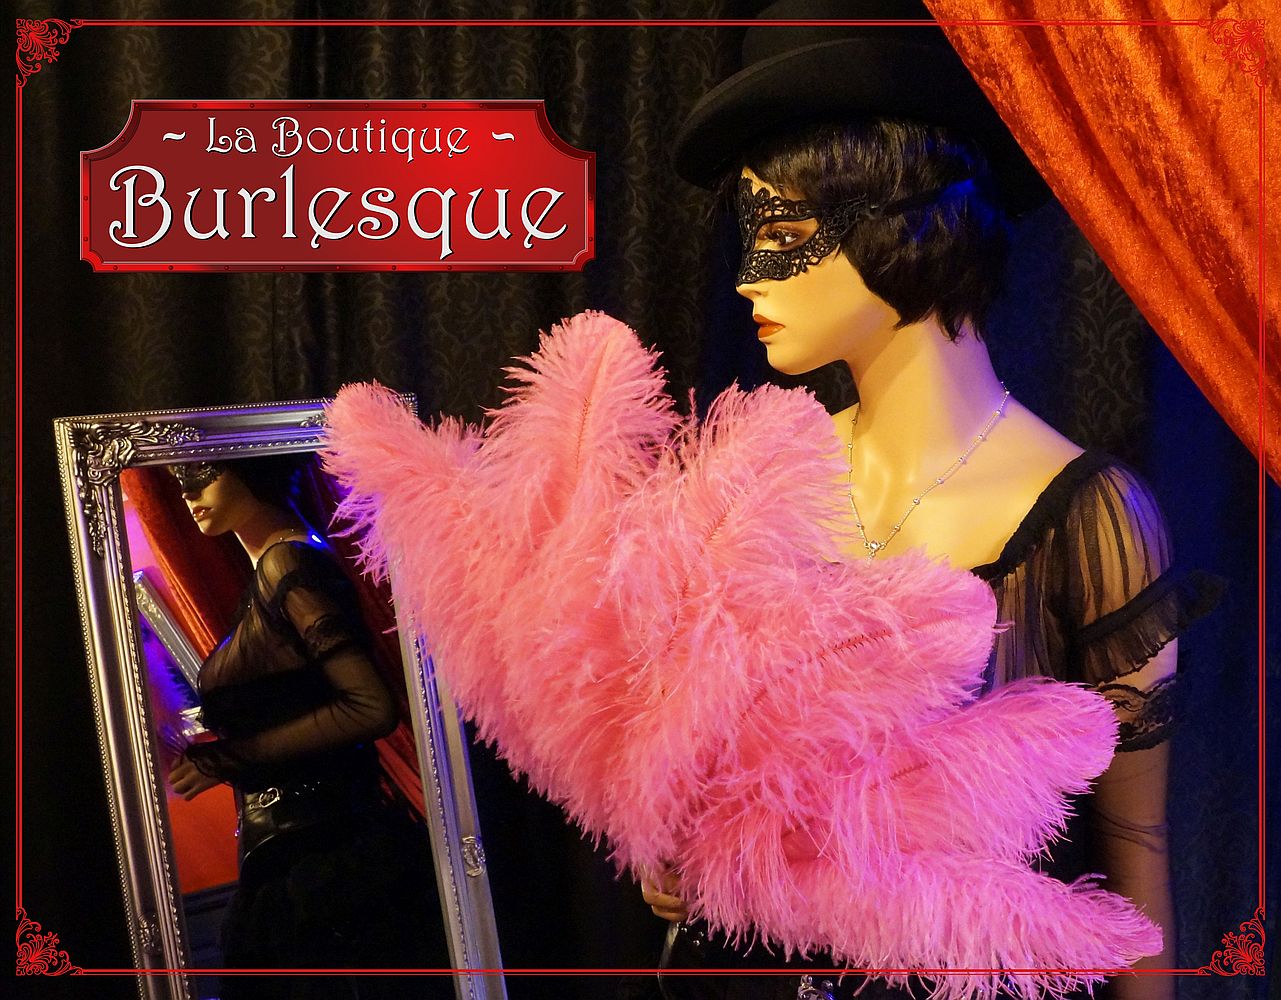 die boutique burlesque in der absinthstube lädt zum stöbern ein